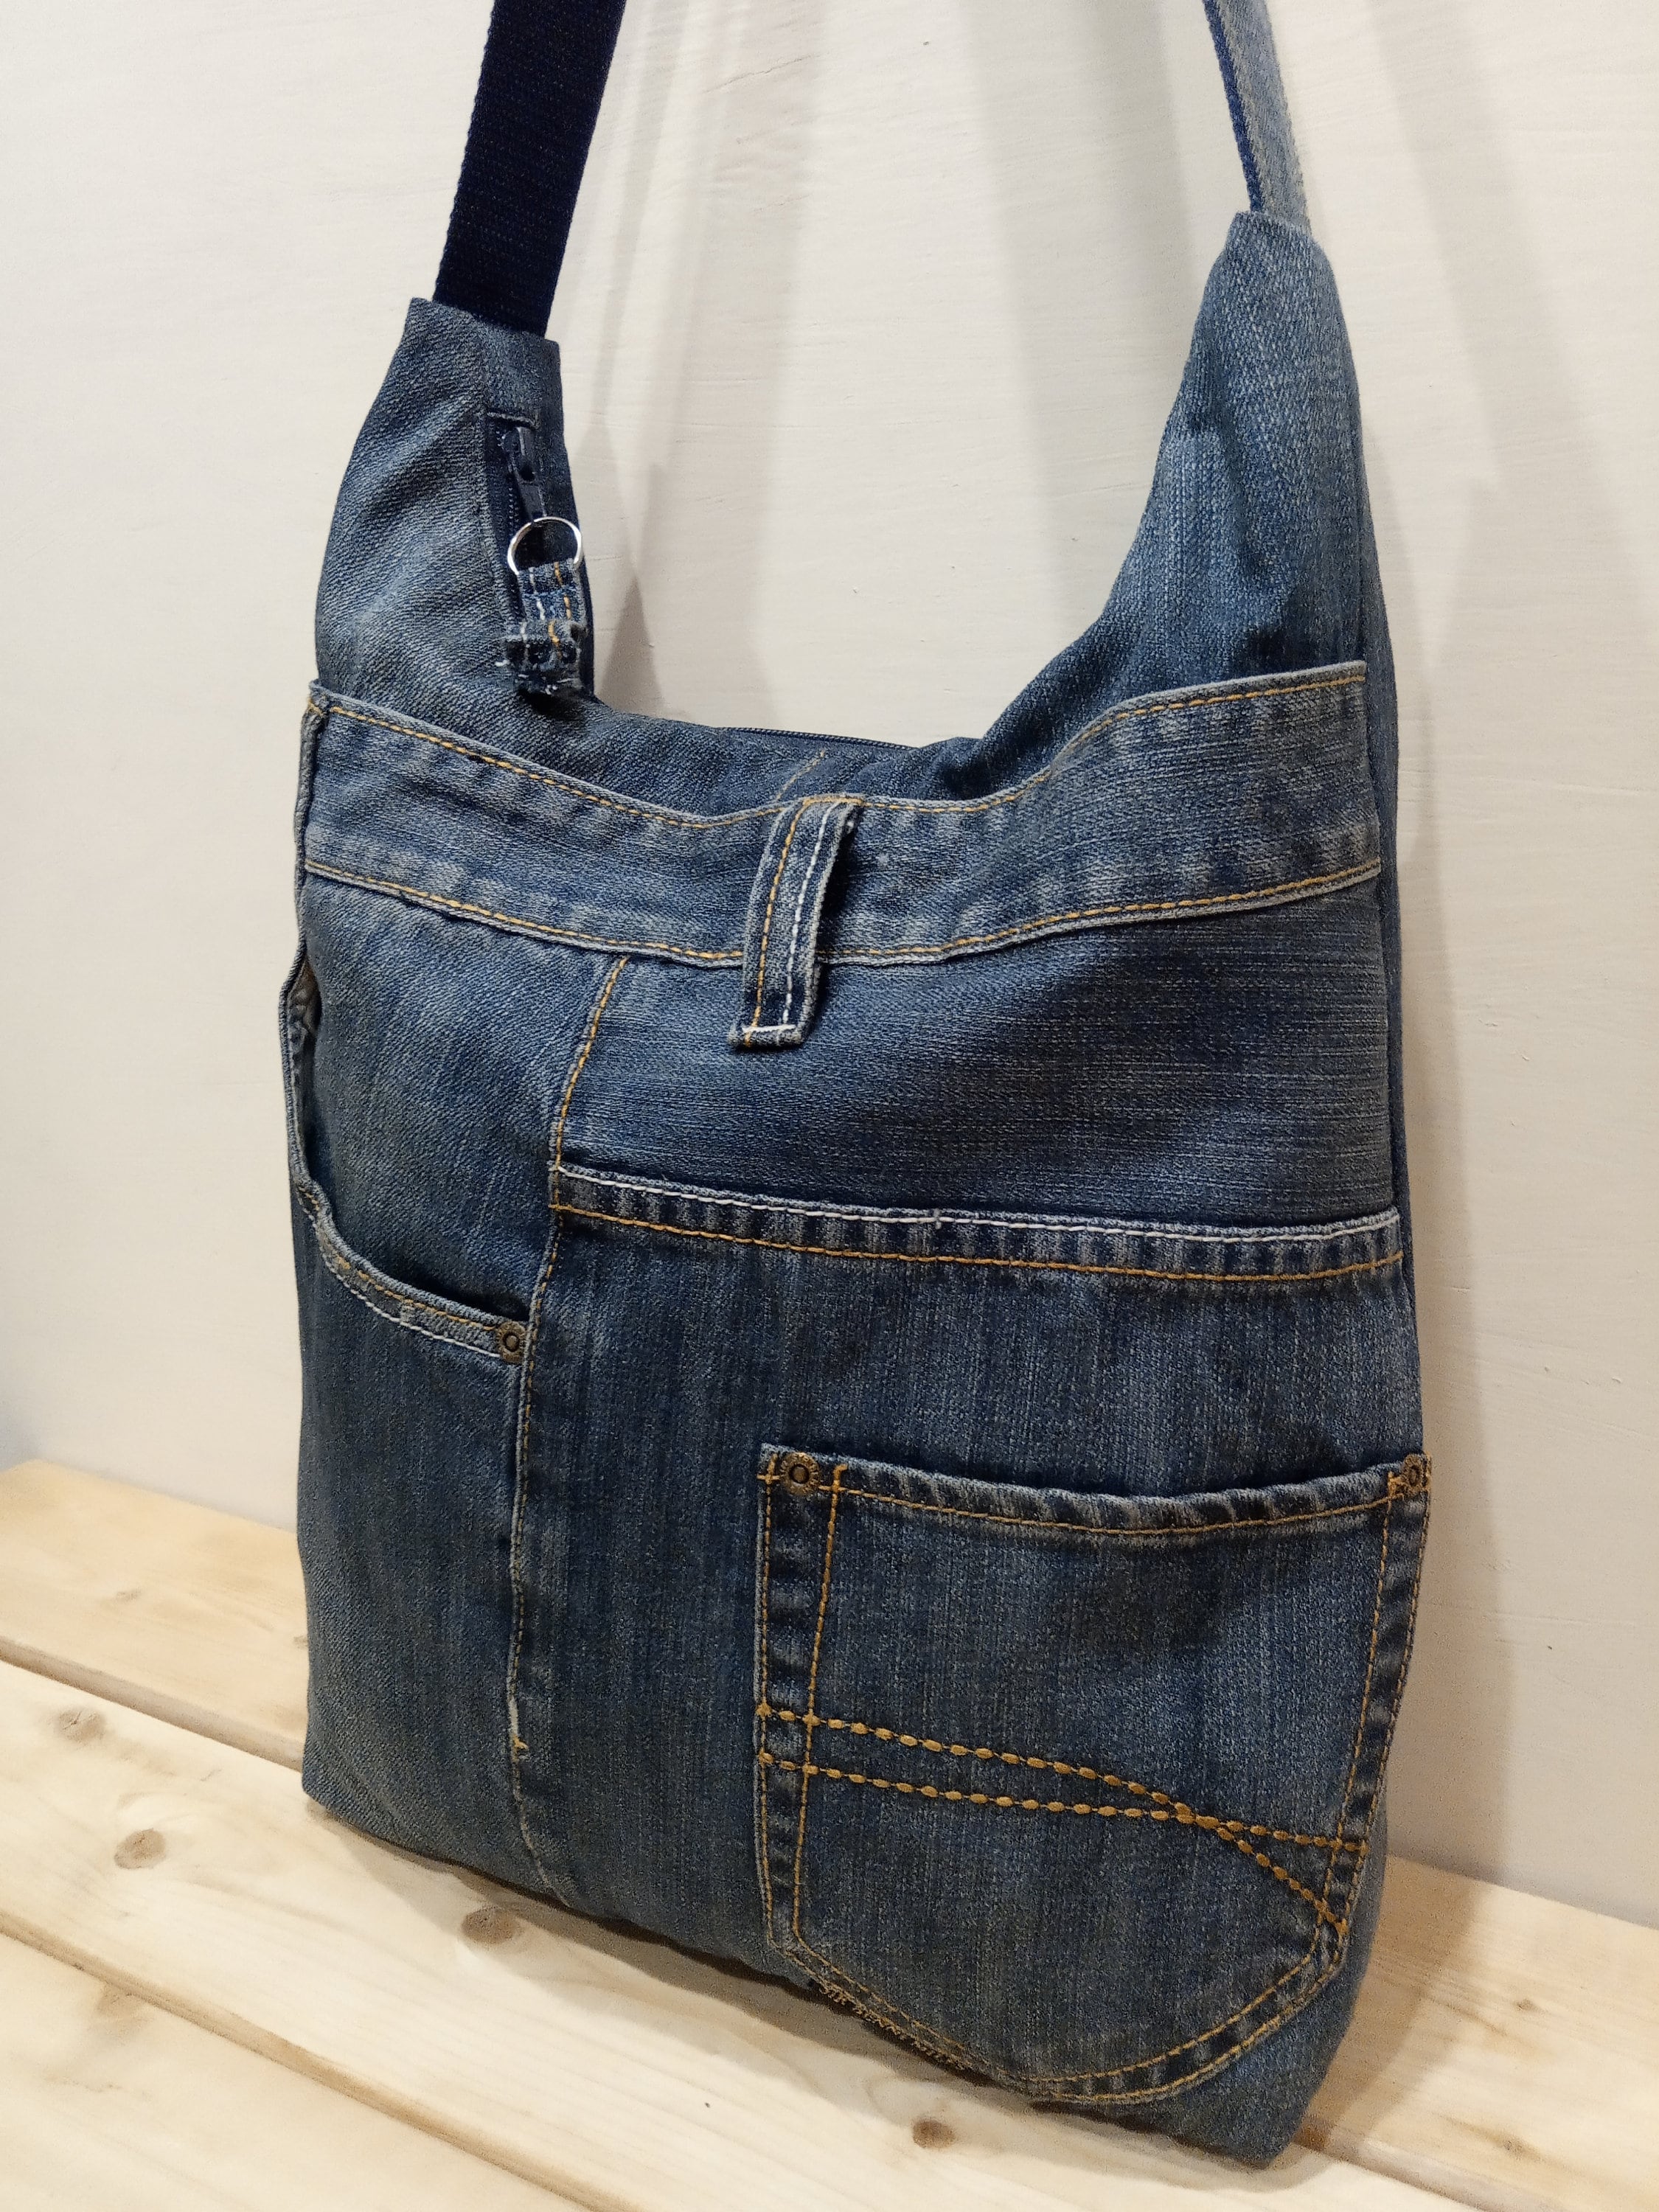 Denim shoulder bag jeans hobo bag upcycled jeans purse | Etsy